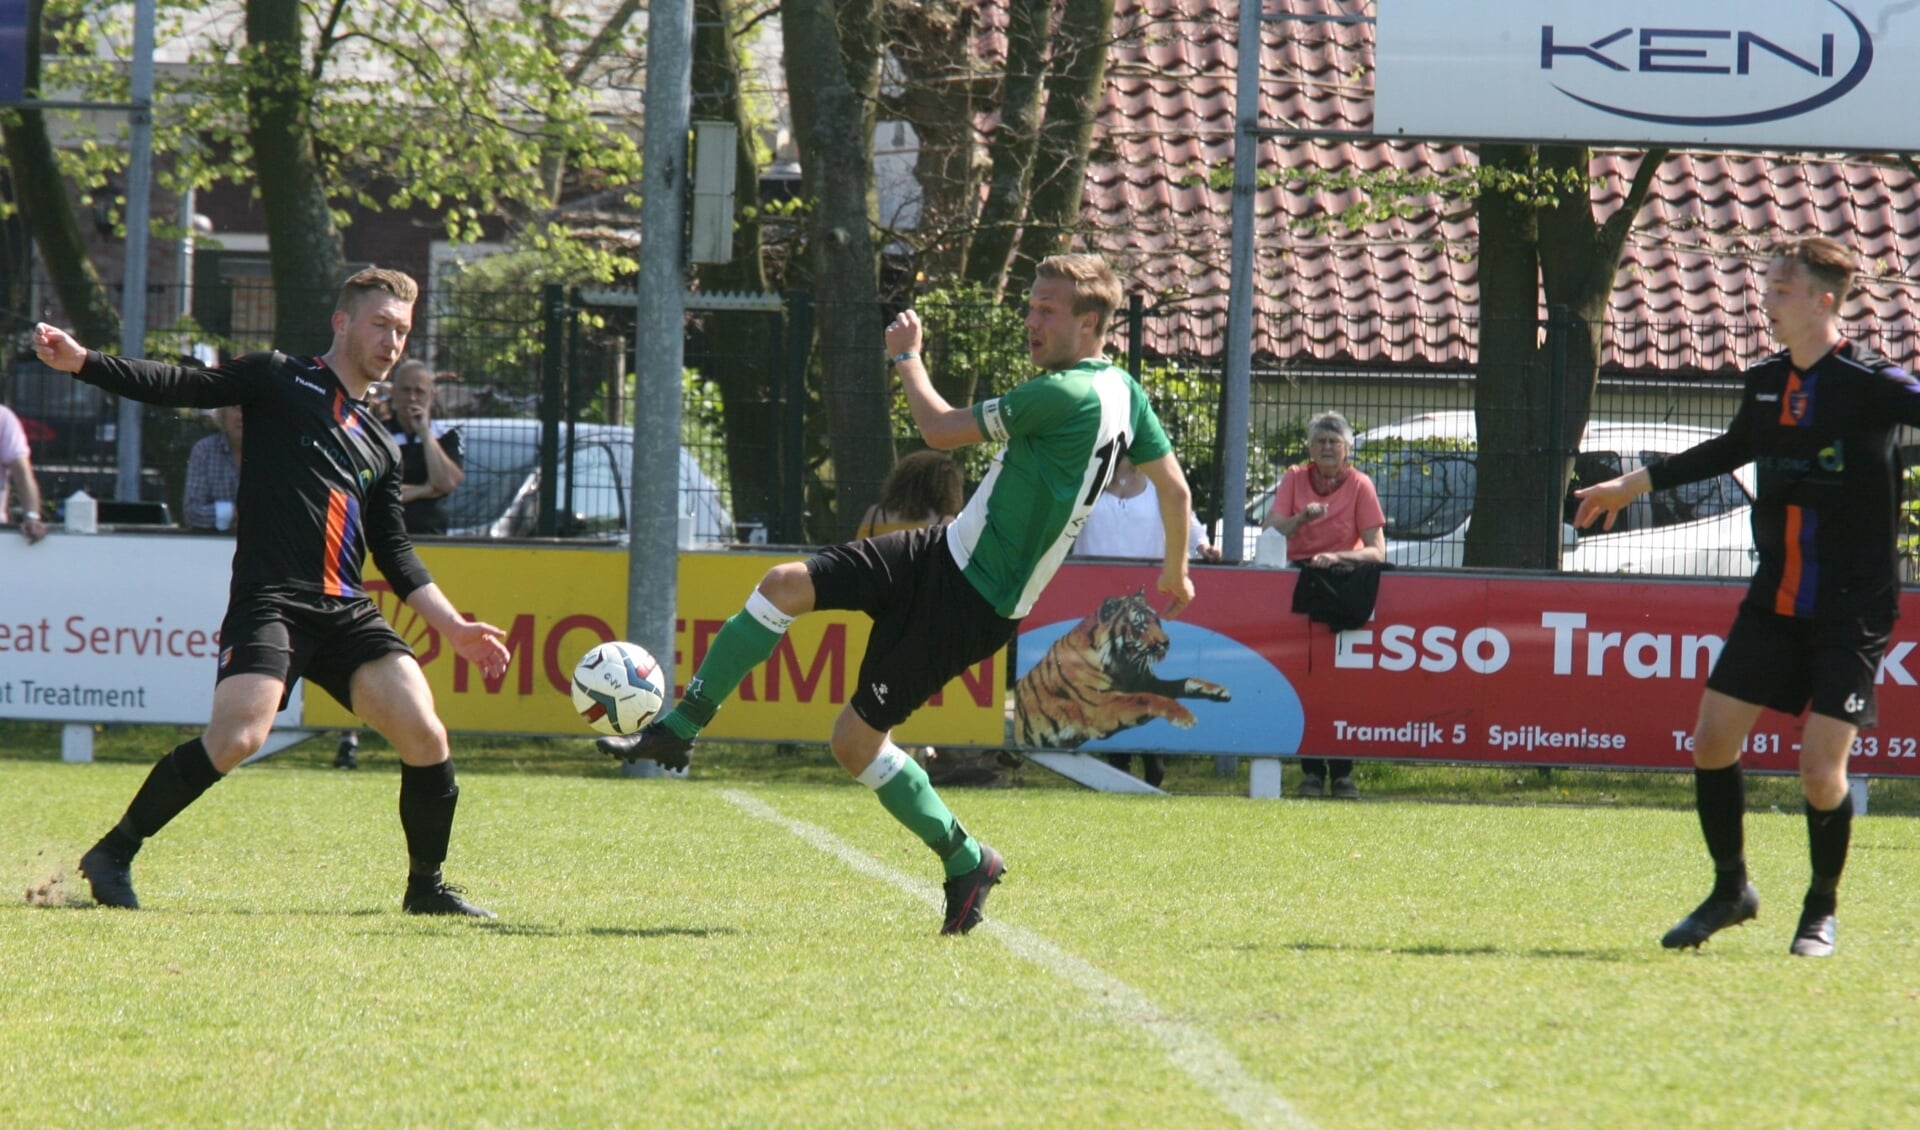 Pascal van Hulst scoorde twee keer voor OVV en bracht zijn seizoens- totaal op dertien treffers. (Foto: Wil van Balen)